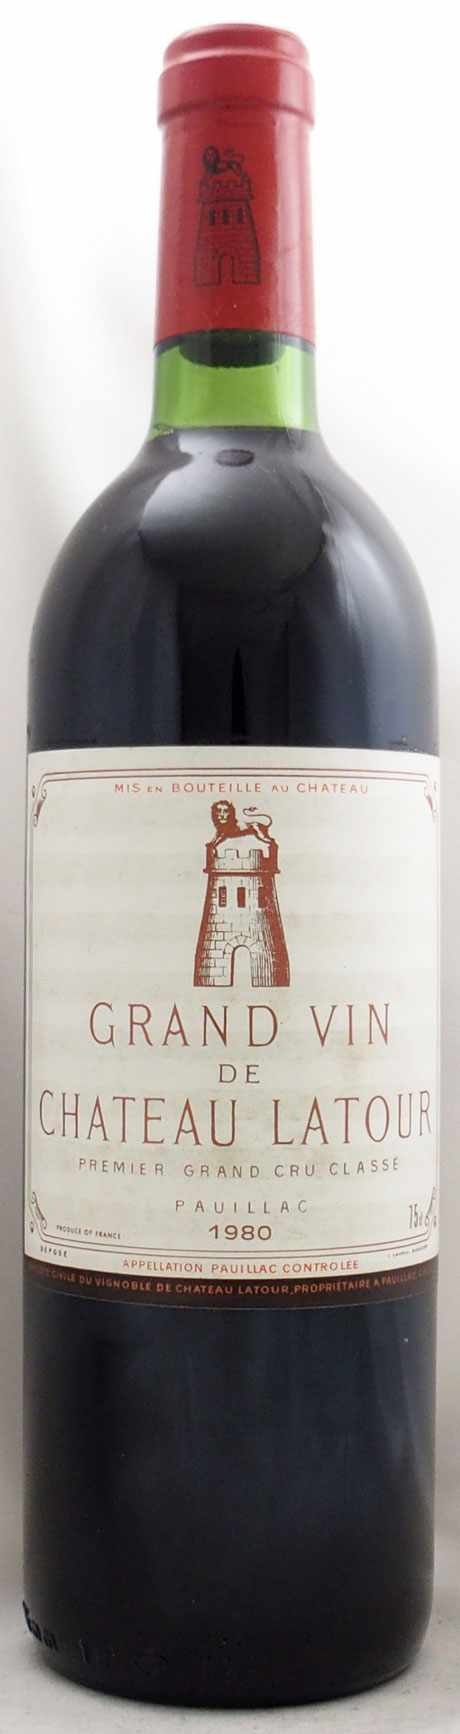 1980年 シャトー ラトゥール CHATEAU LATOUR - 年号ワイン